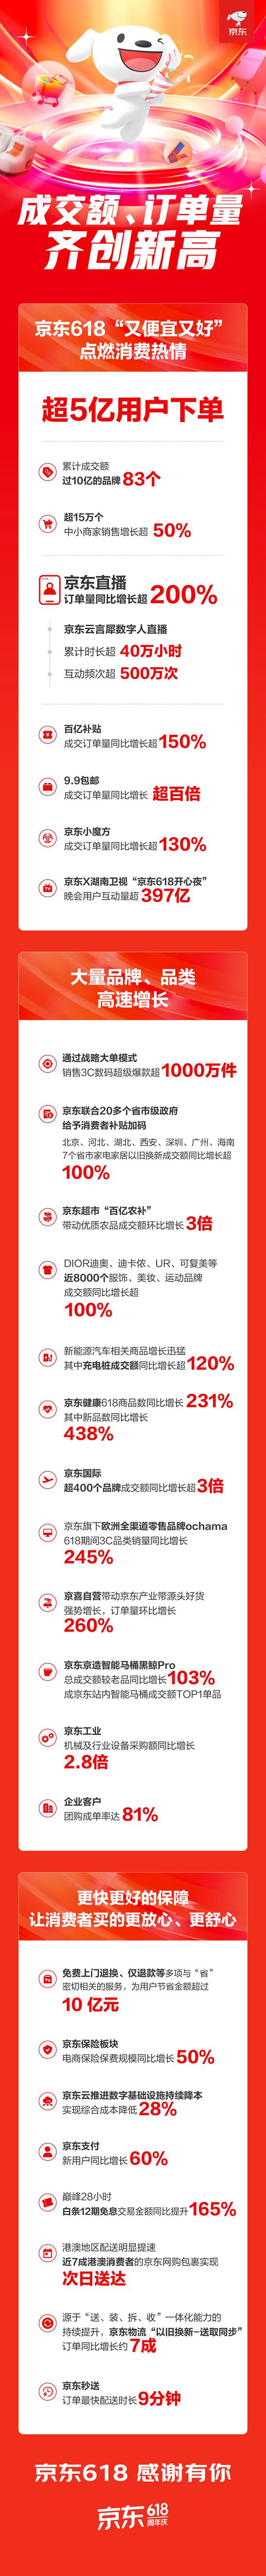 京东618超5亿用户下单 成交额、订单量齐创新高 京东直播订单量同比增长超200%  第1张